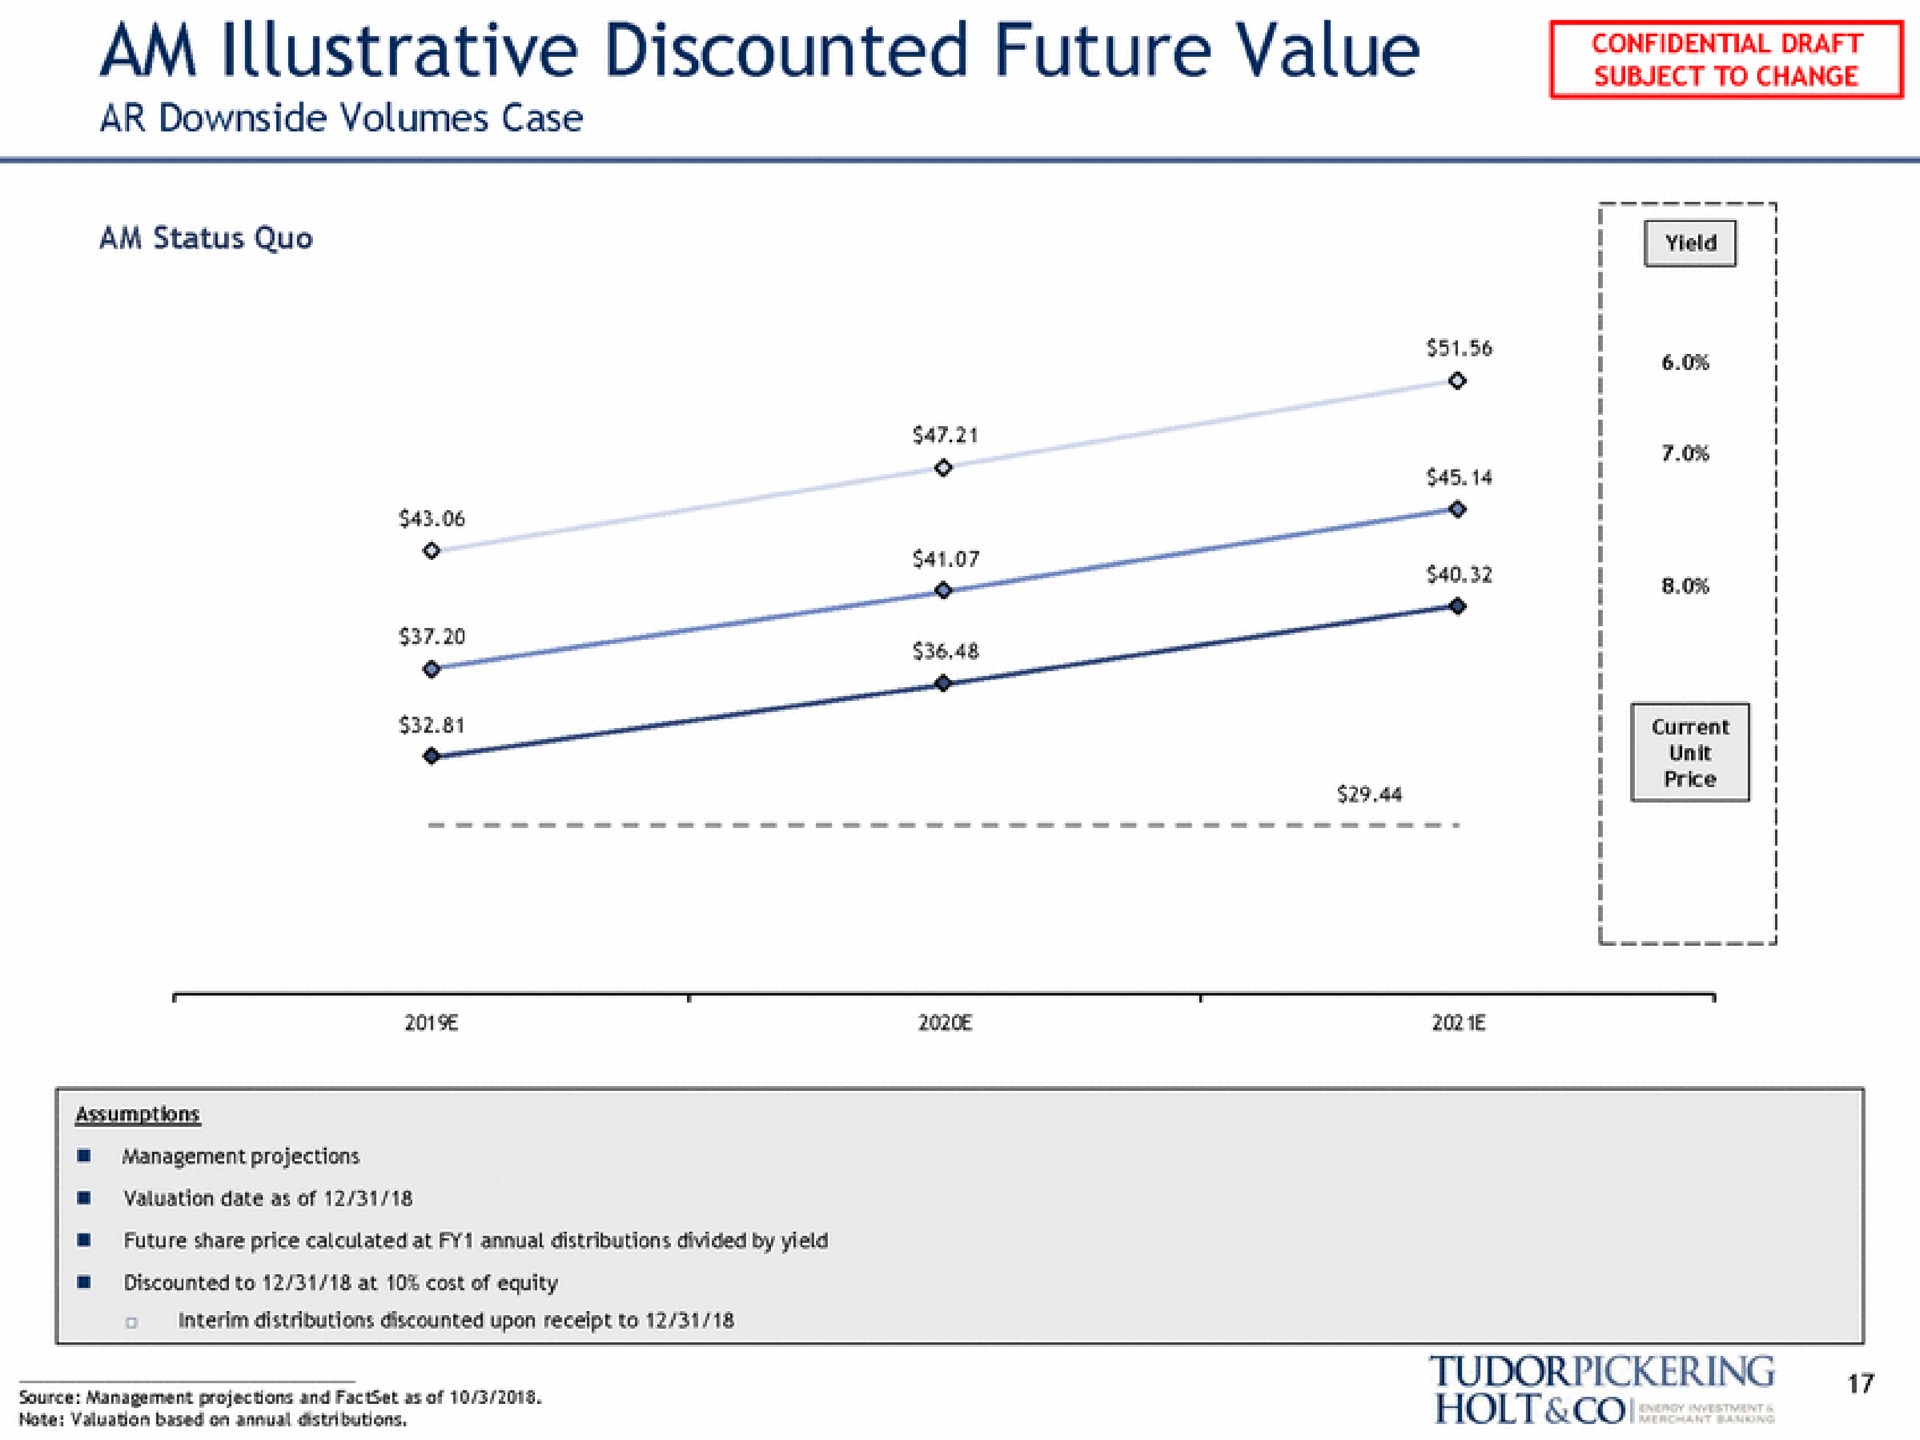 am illustrative discounted future value a i holt lei | Tudor, Pickering, Holt & Co